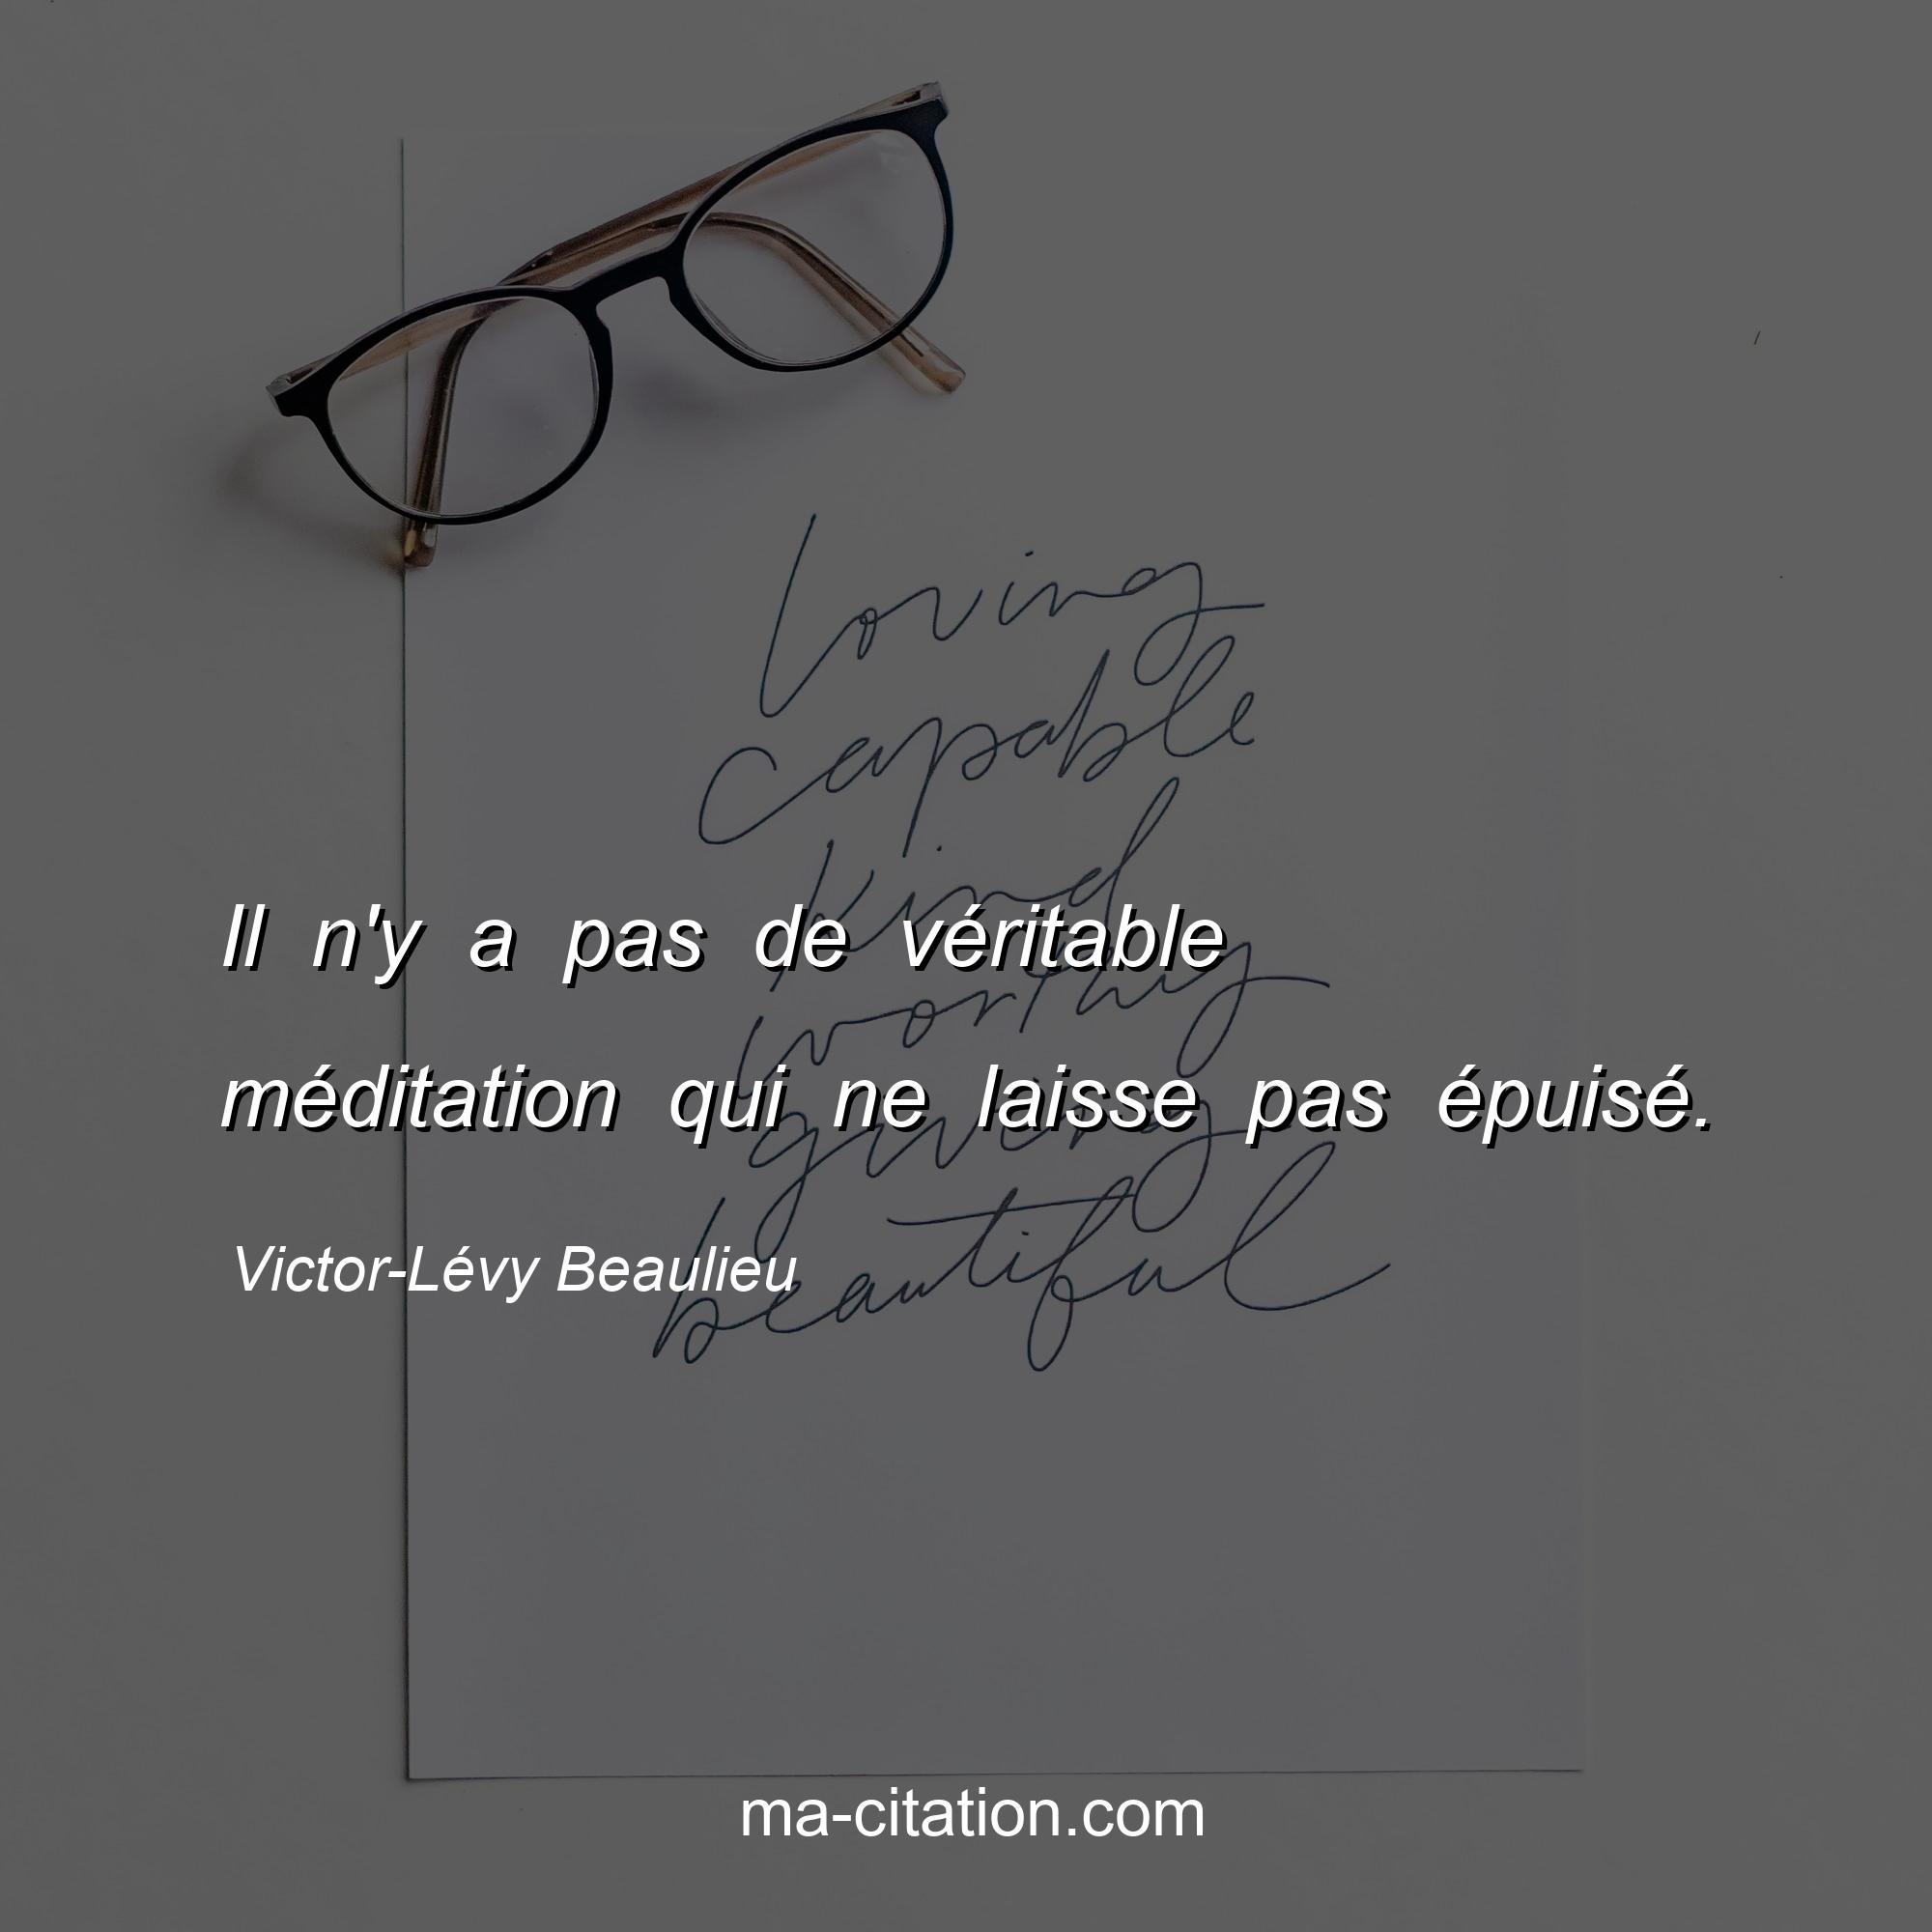 Victor-Lévy Beaulieu : Il n'y a pas de véritable méditation qui ne laisse pas épuisé.